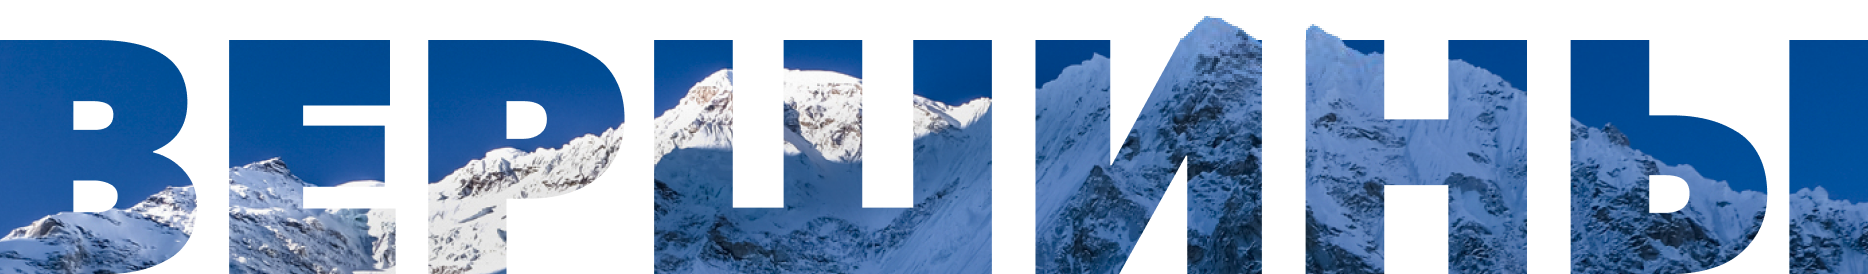 Продвинутый уровень: главные вызовы для альпинистов